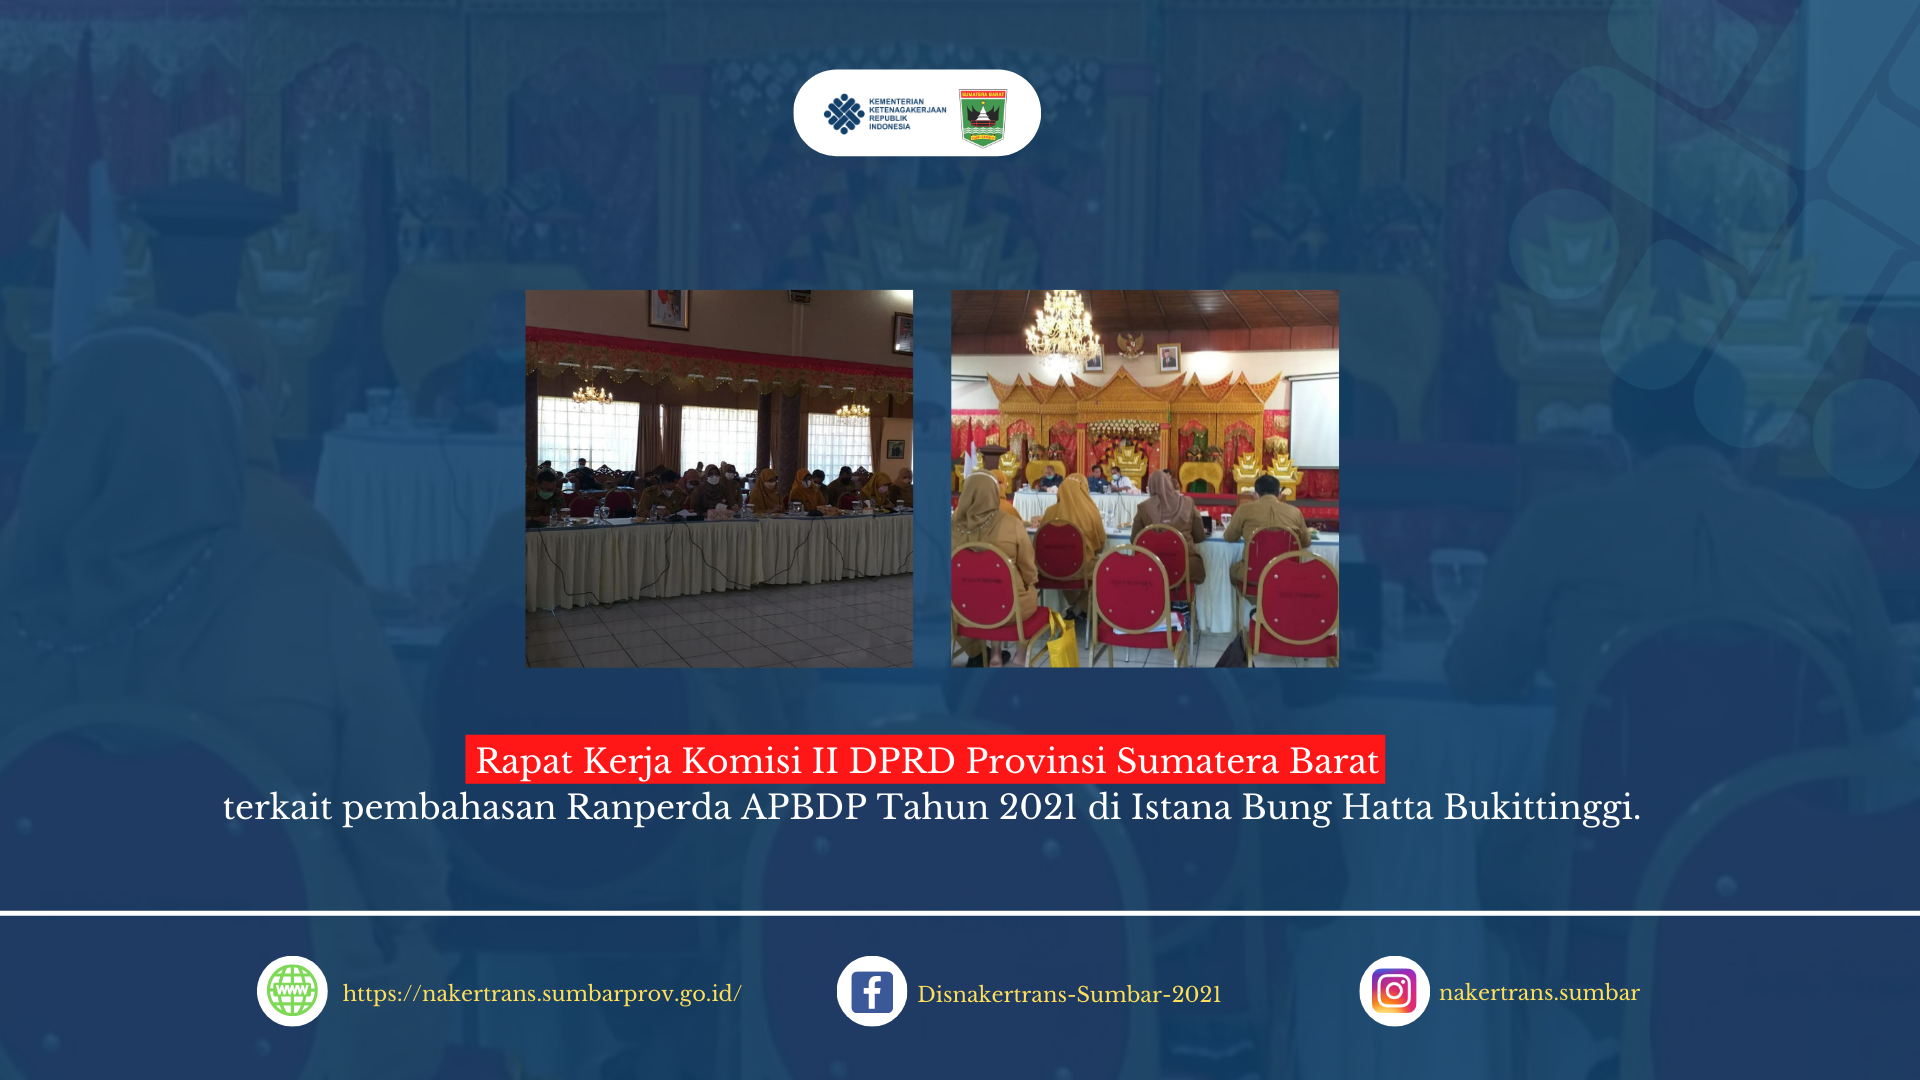 Rapat Kerja Komisi II DPRD Provinsi Sumatera Barat terkait pembahasan Ranperda APBDP Tahun 2021 di Istana Bung Hatta Bukittinggi.